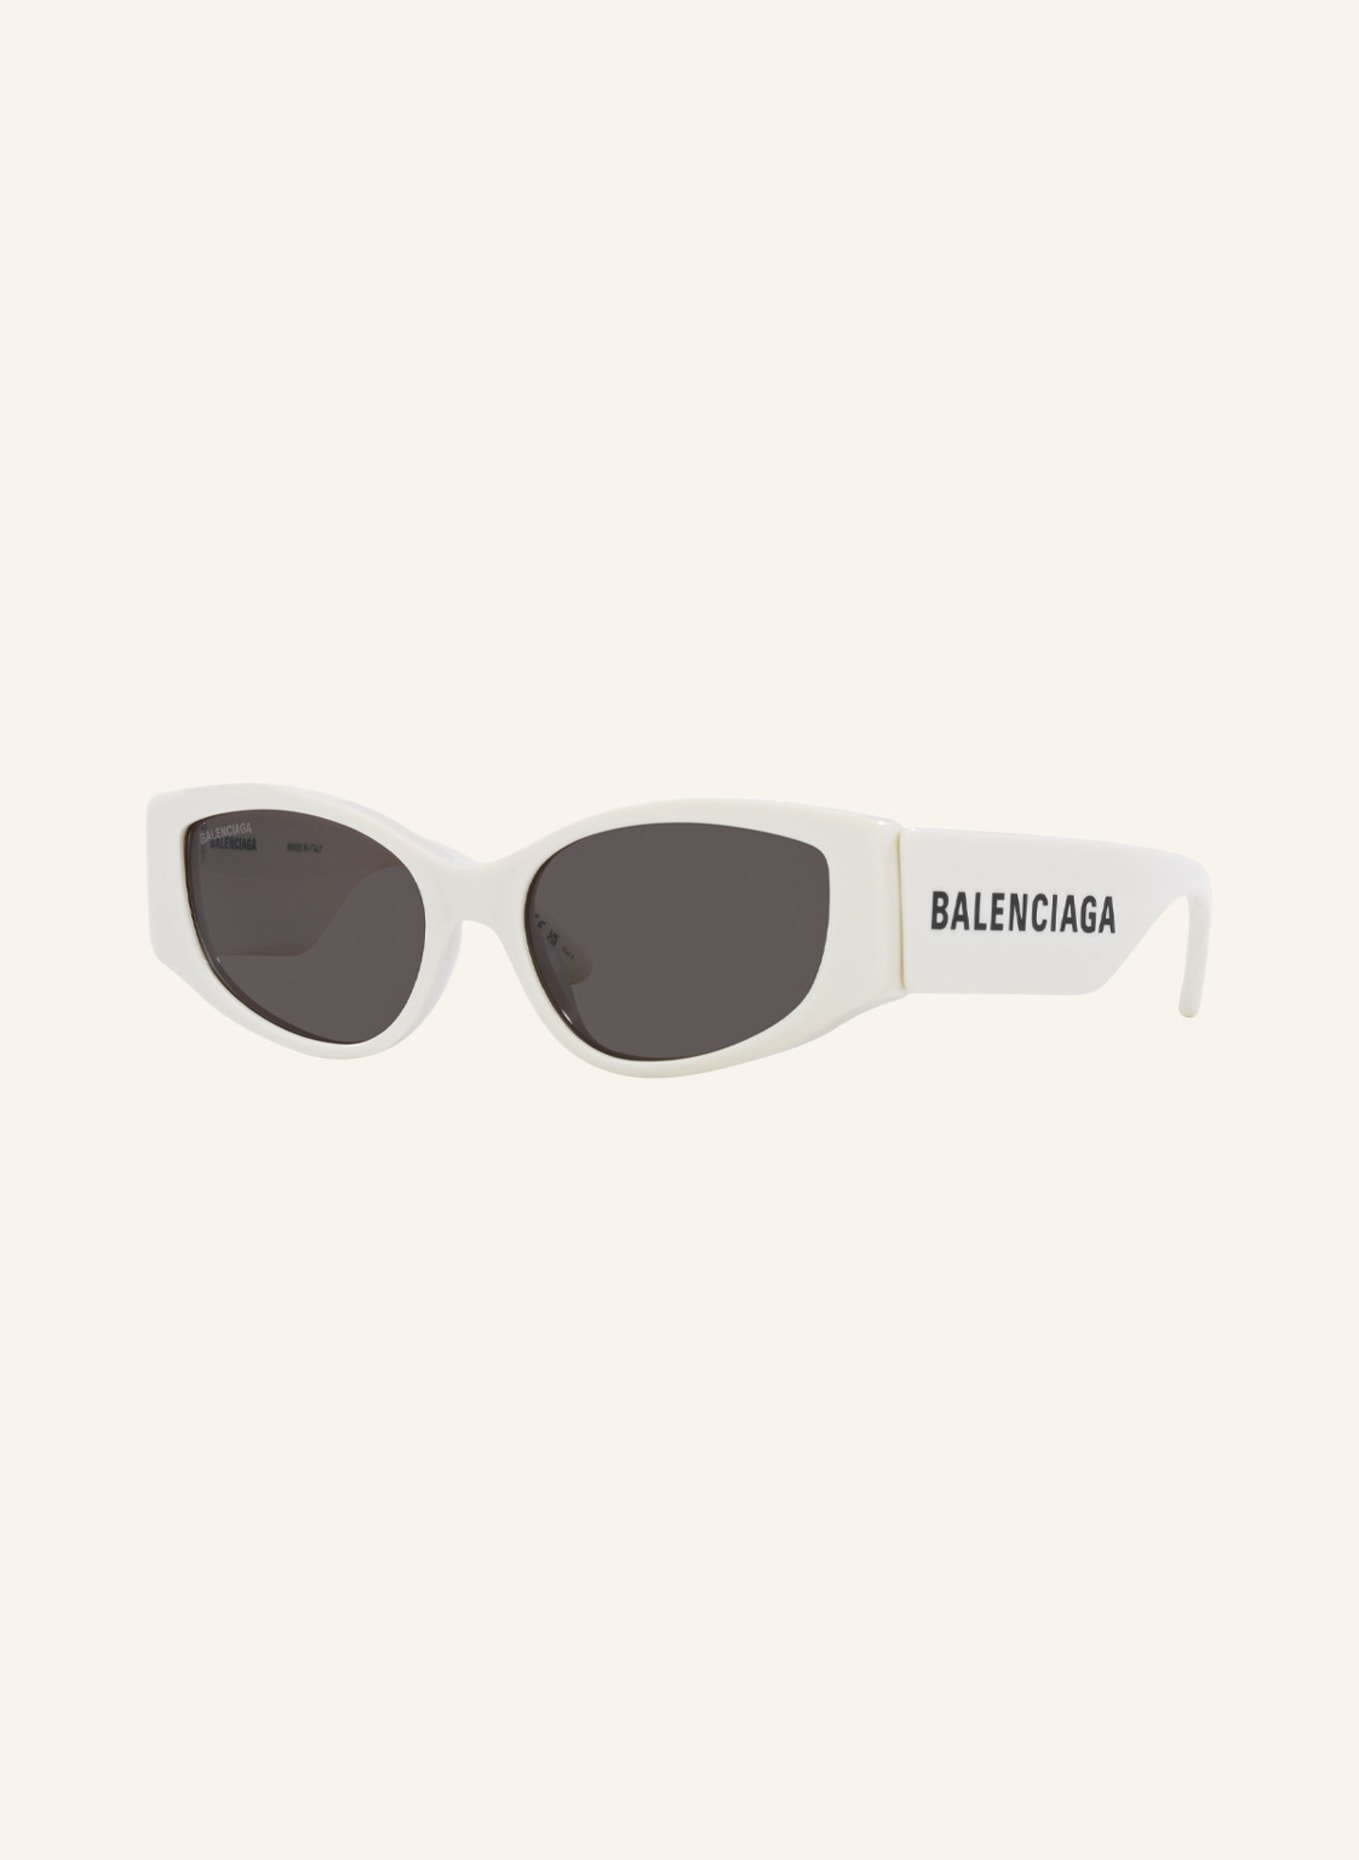 BALENCIAGA Sunglasses BB0258S, Color: 4800L1 - WHITE/ DARK GRAY (Image 1)